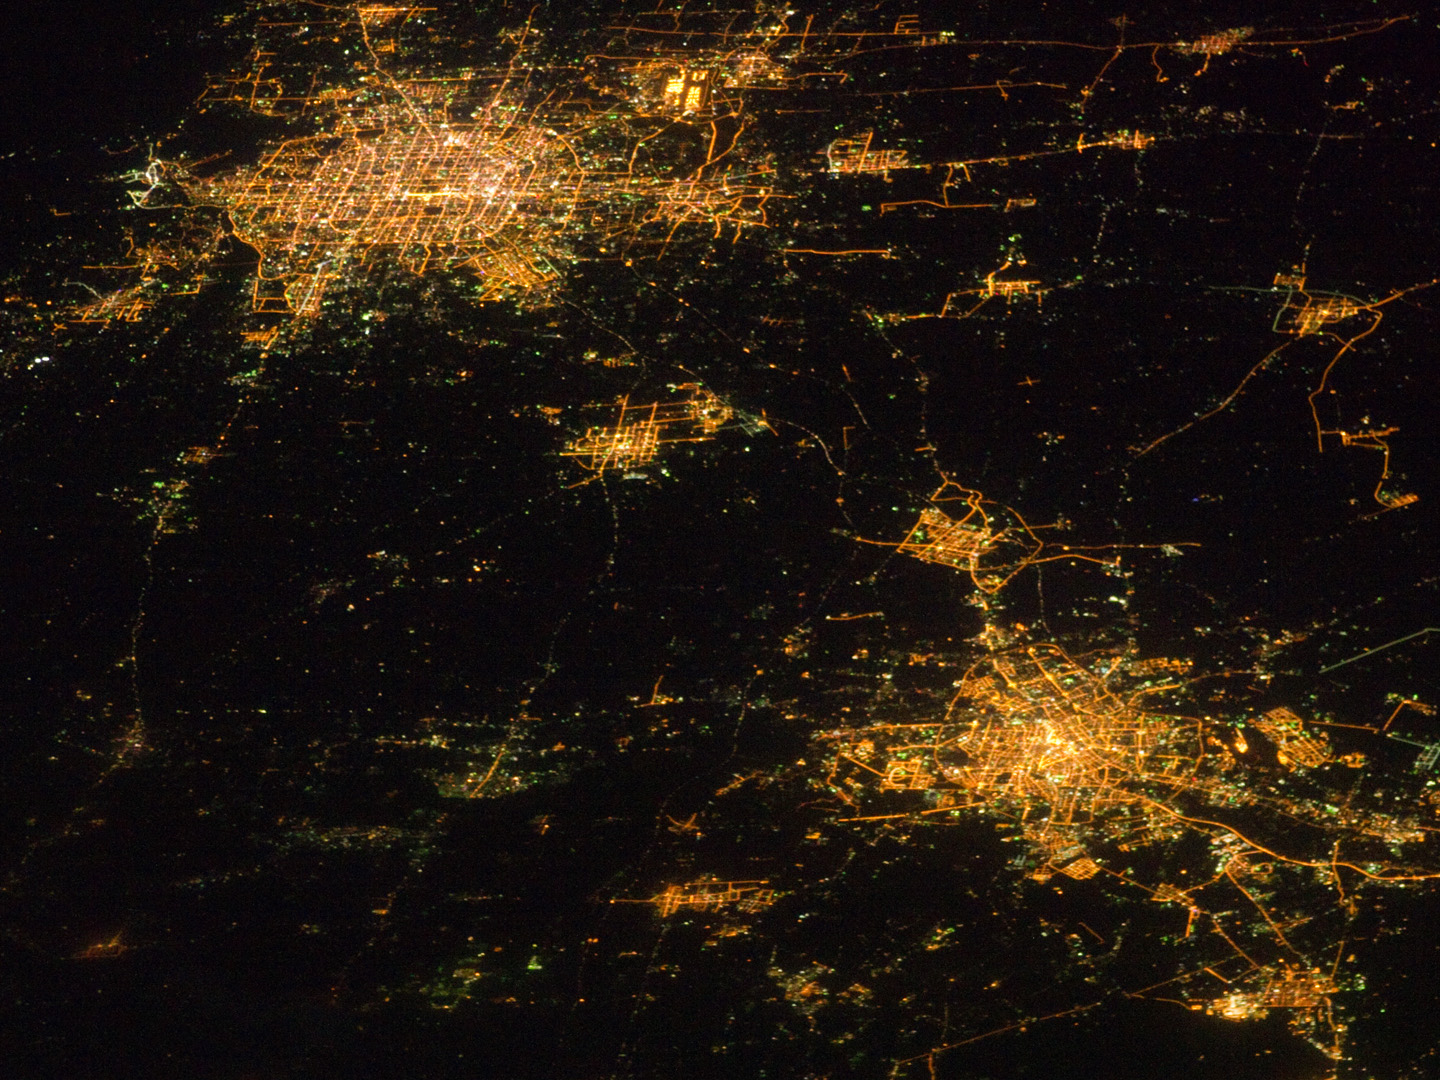 фото северной кореи ночью из космоса